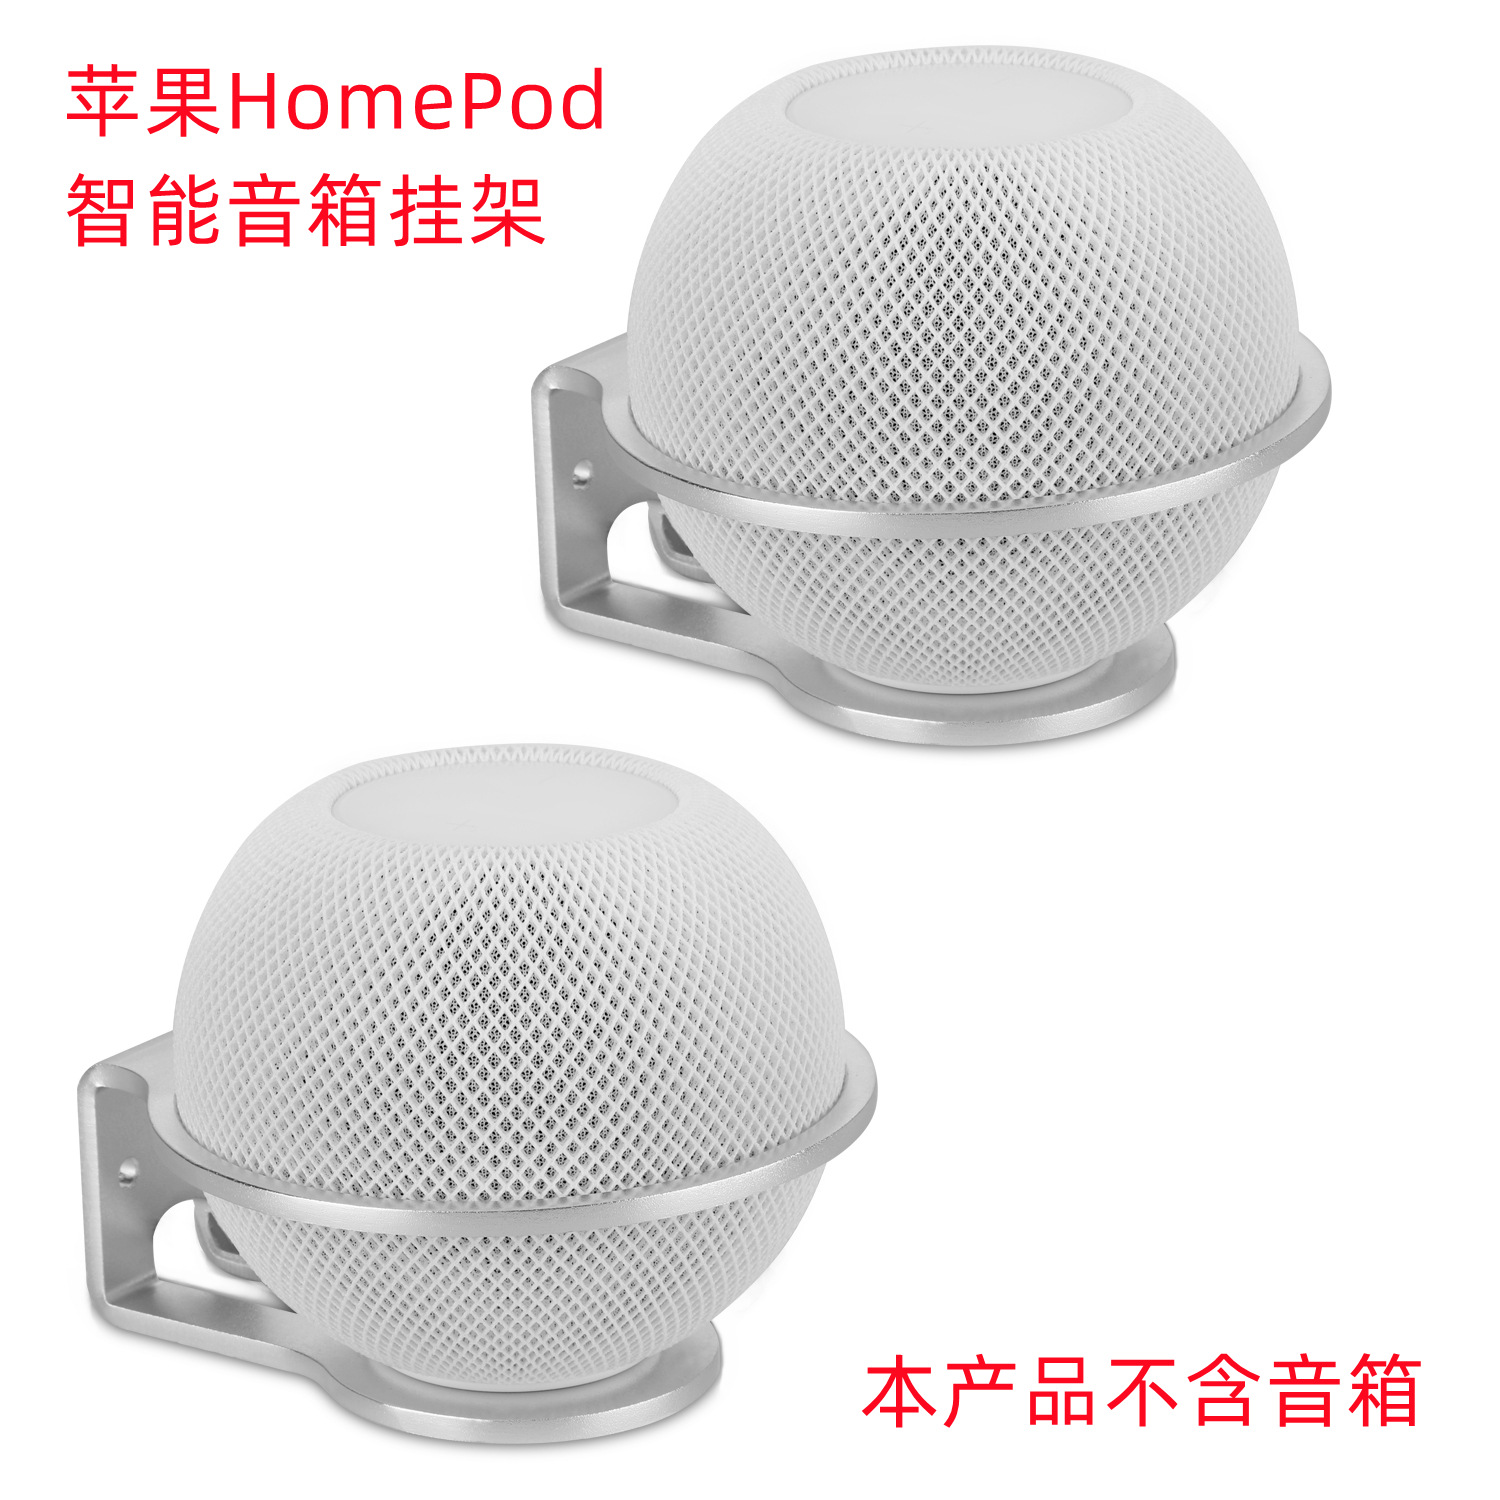 适用于苹果HomePod mini/HomePod 2智能蓝牙音箱支架金属壁挂支架